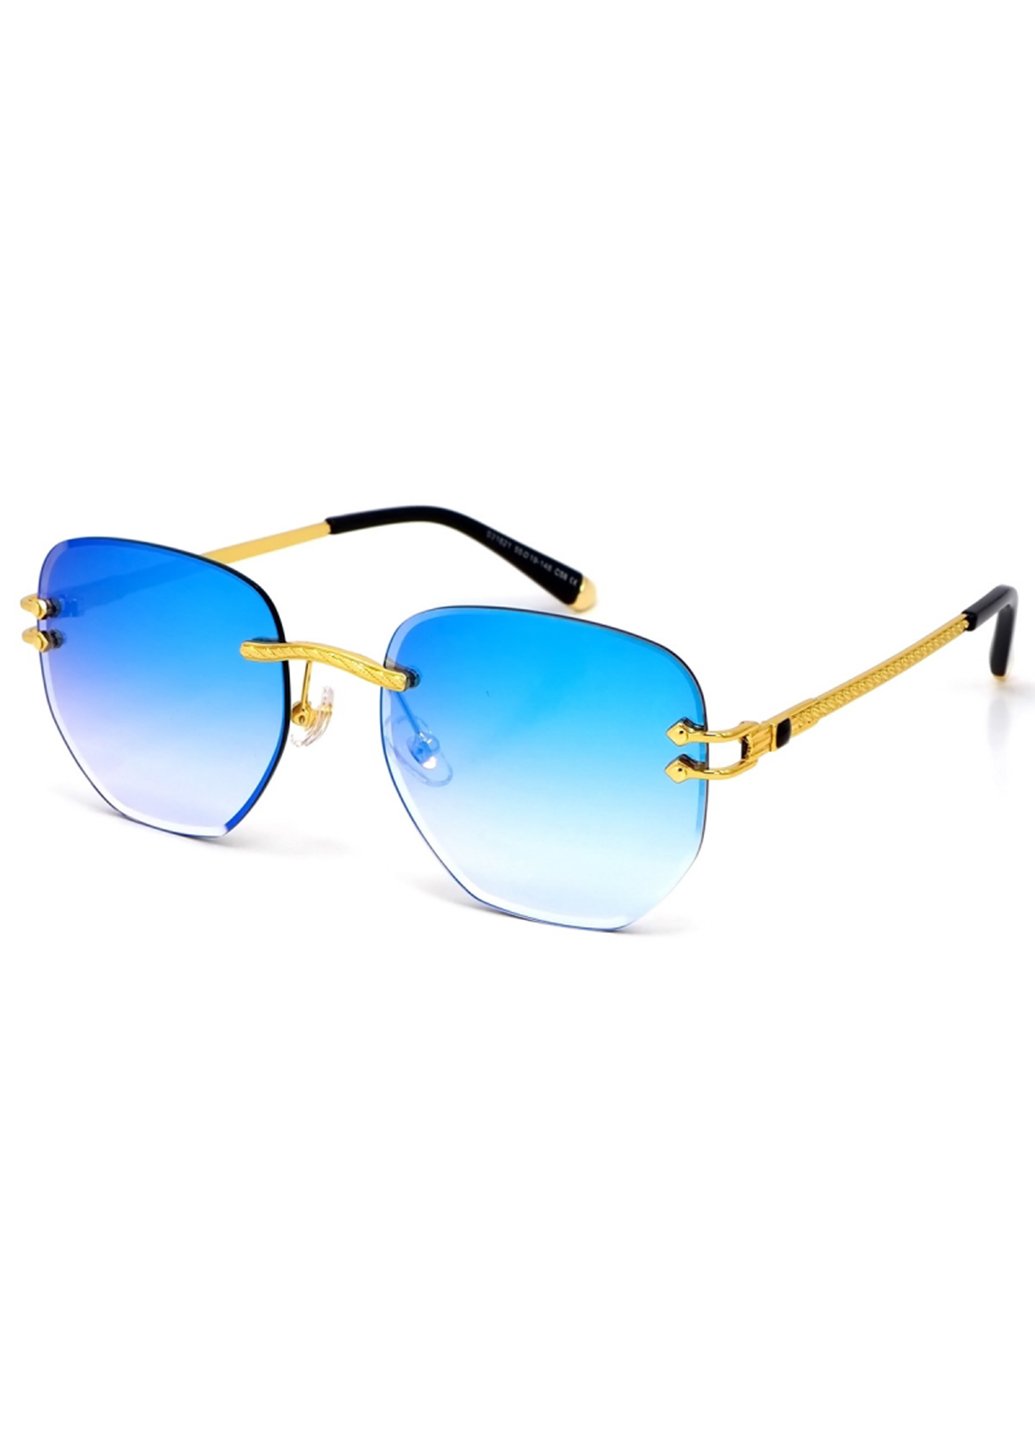 Купить Женские солнцезащитные очки Merlini с поляризацией S31821 117062 - Золотистый в интернет-магазине